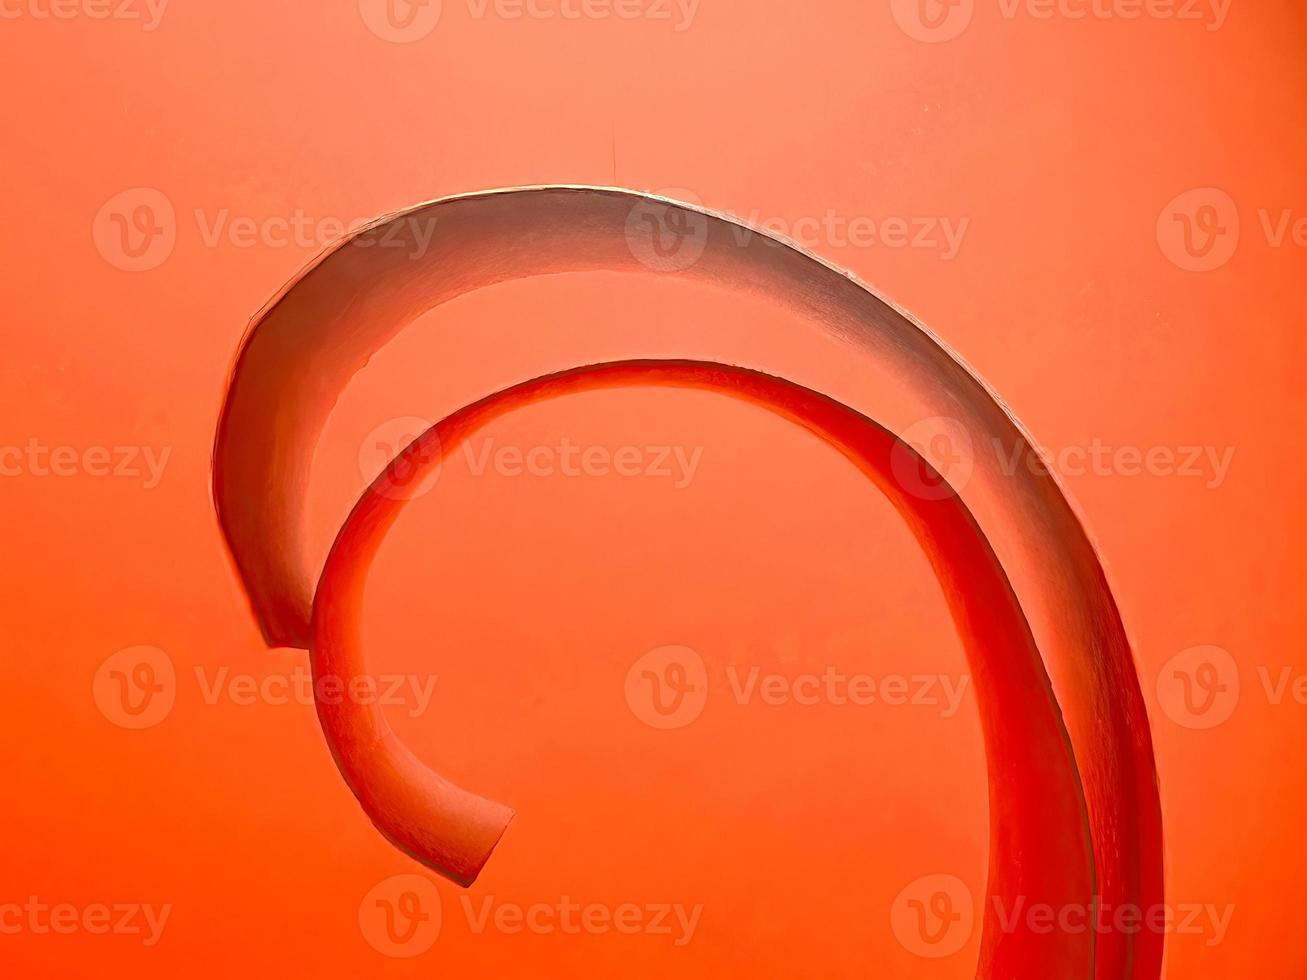 immagine o fotografia di alta qualità del nastro a spirale di carta rossa colorata vibrante foto